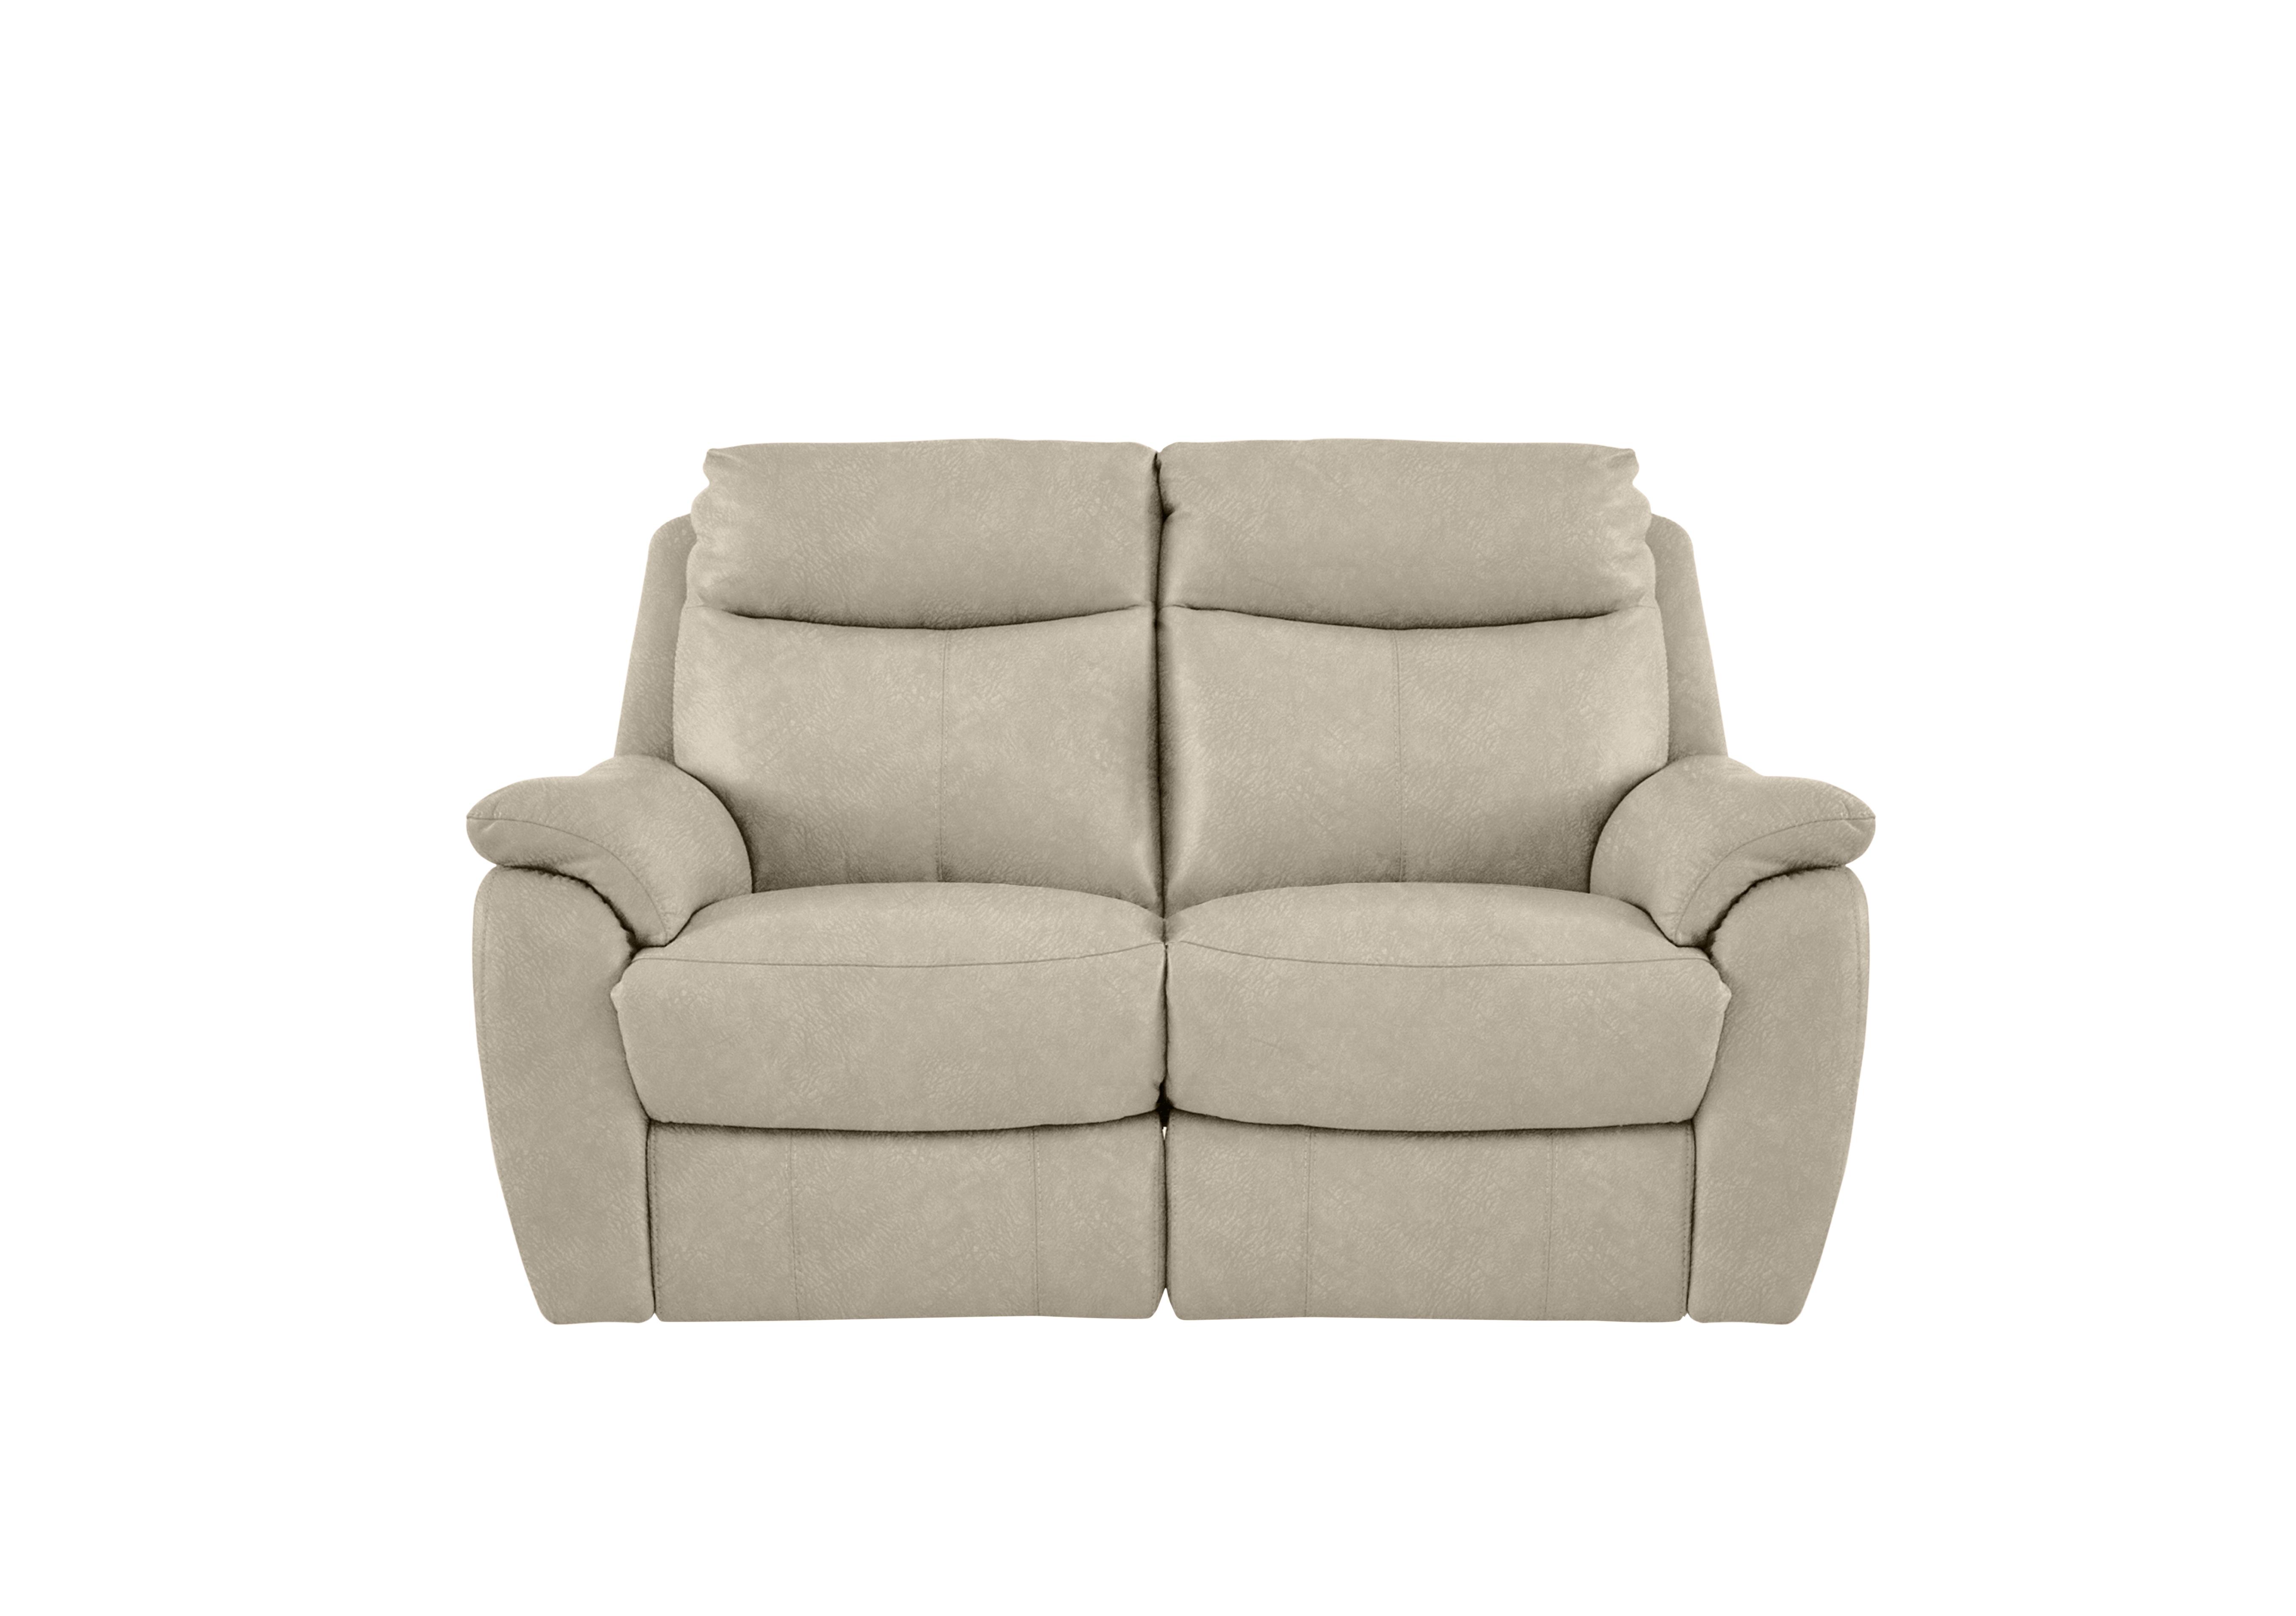 Snug 2 Seater Fabric Sofa in Bfa-Bnn-R26 Fv2 Cream on Furniture Village